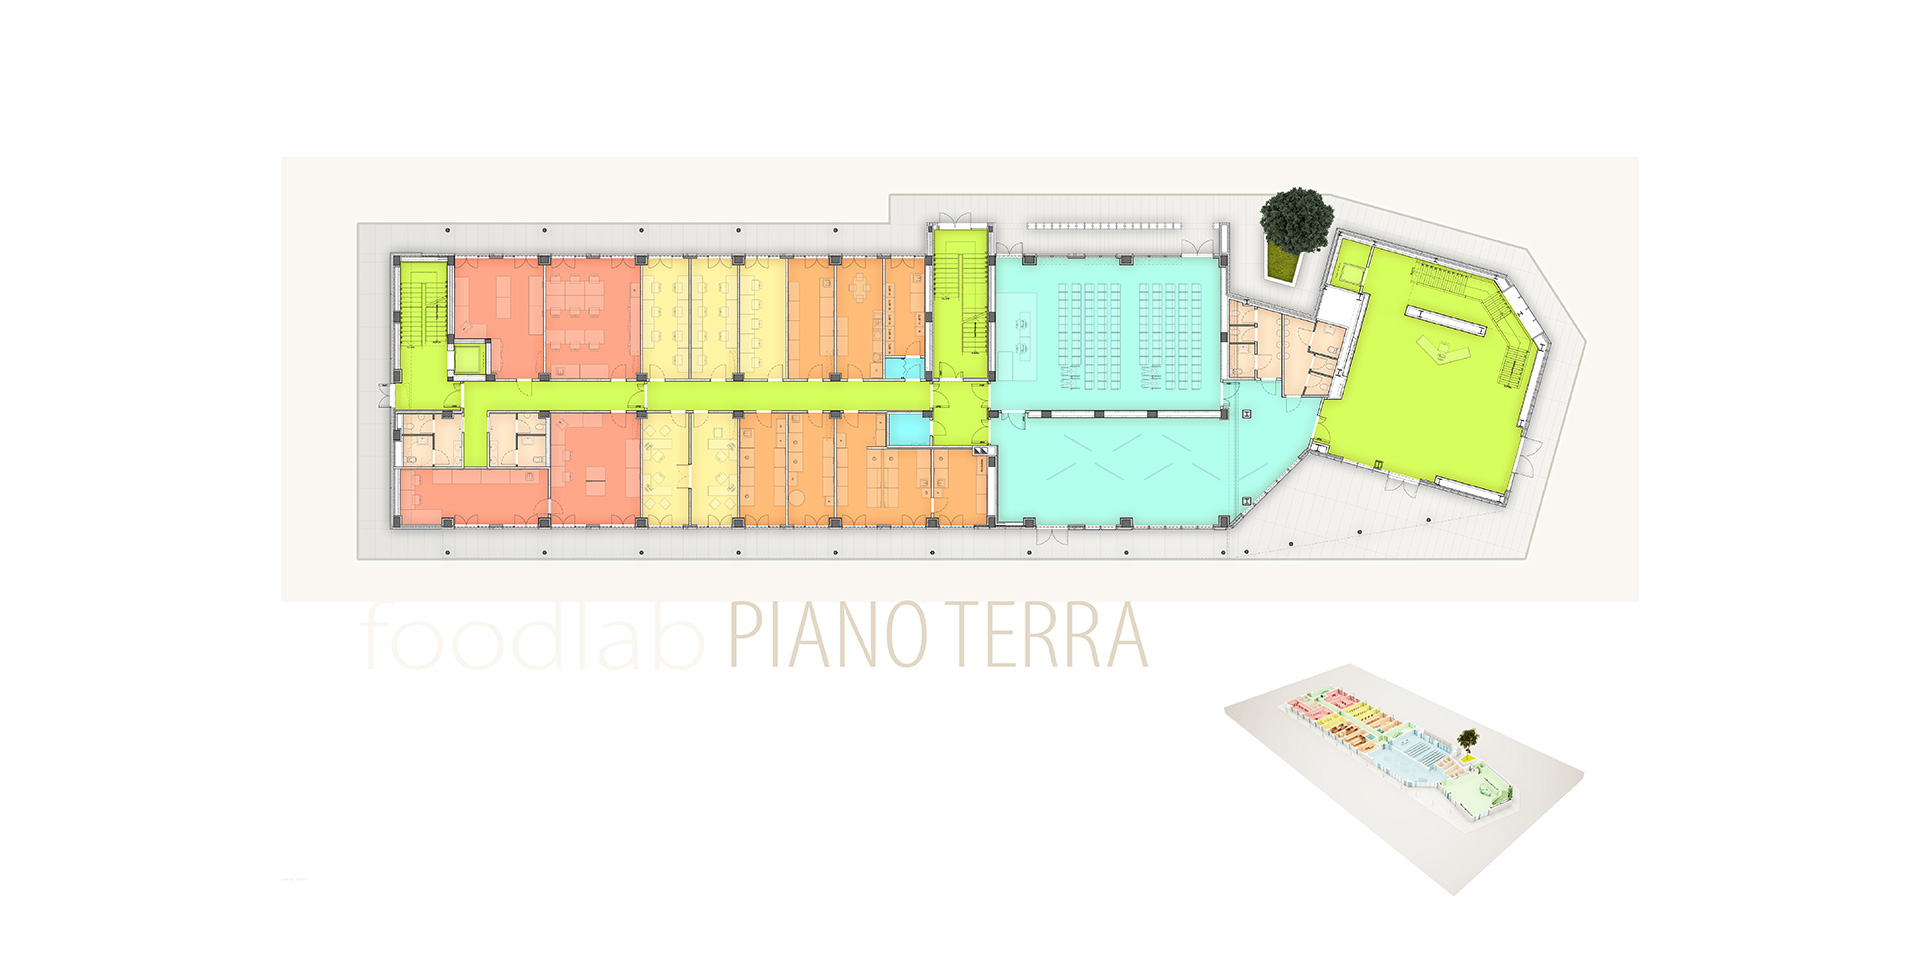 Foodlab a Parma, Binini Partners, Società di architettura e ingegneria